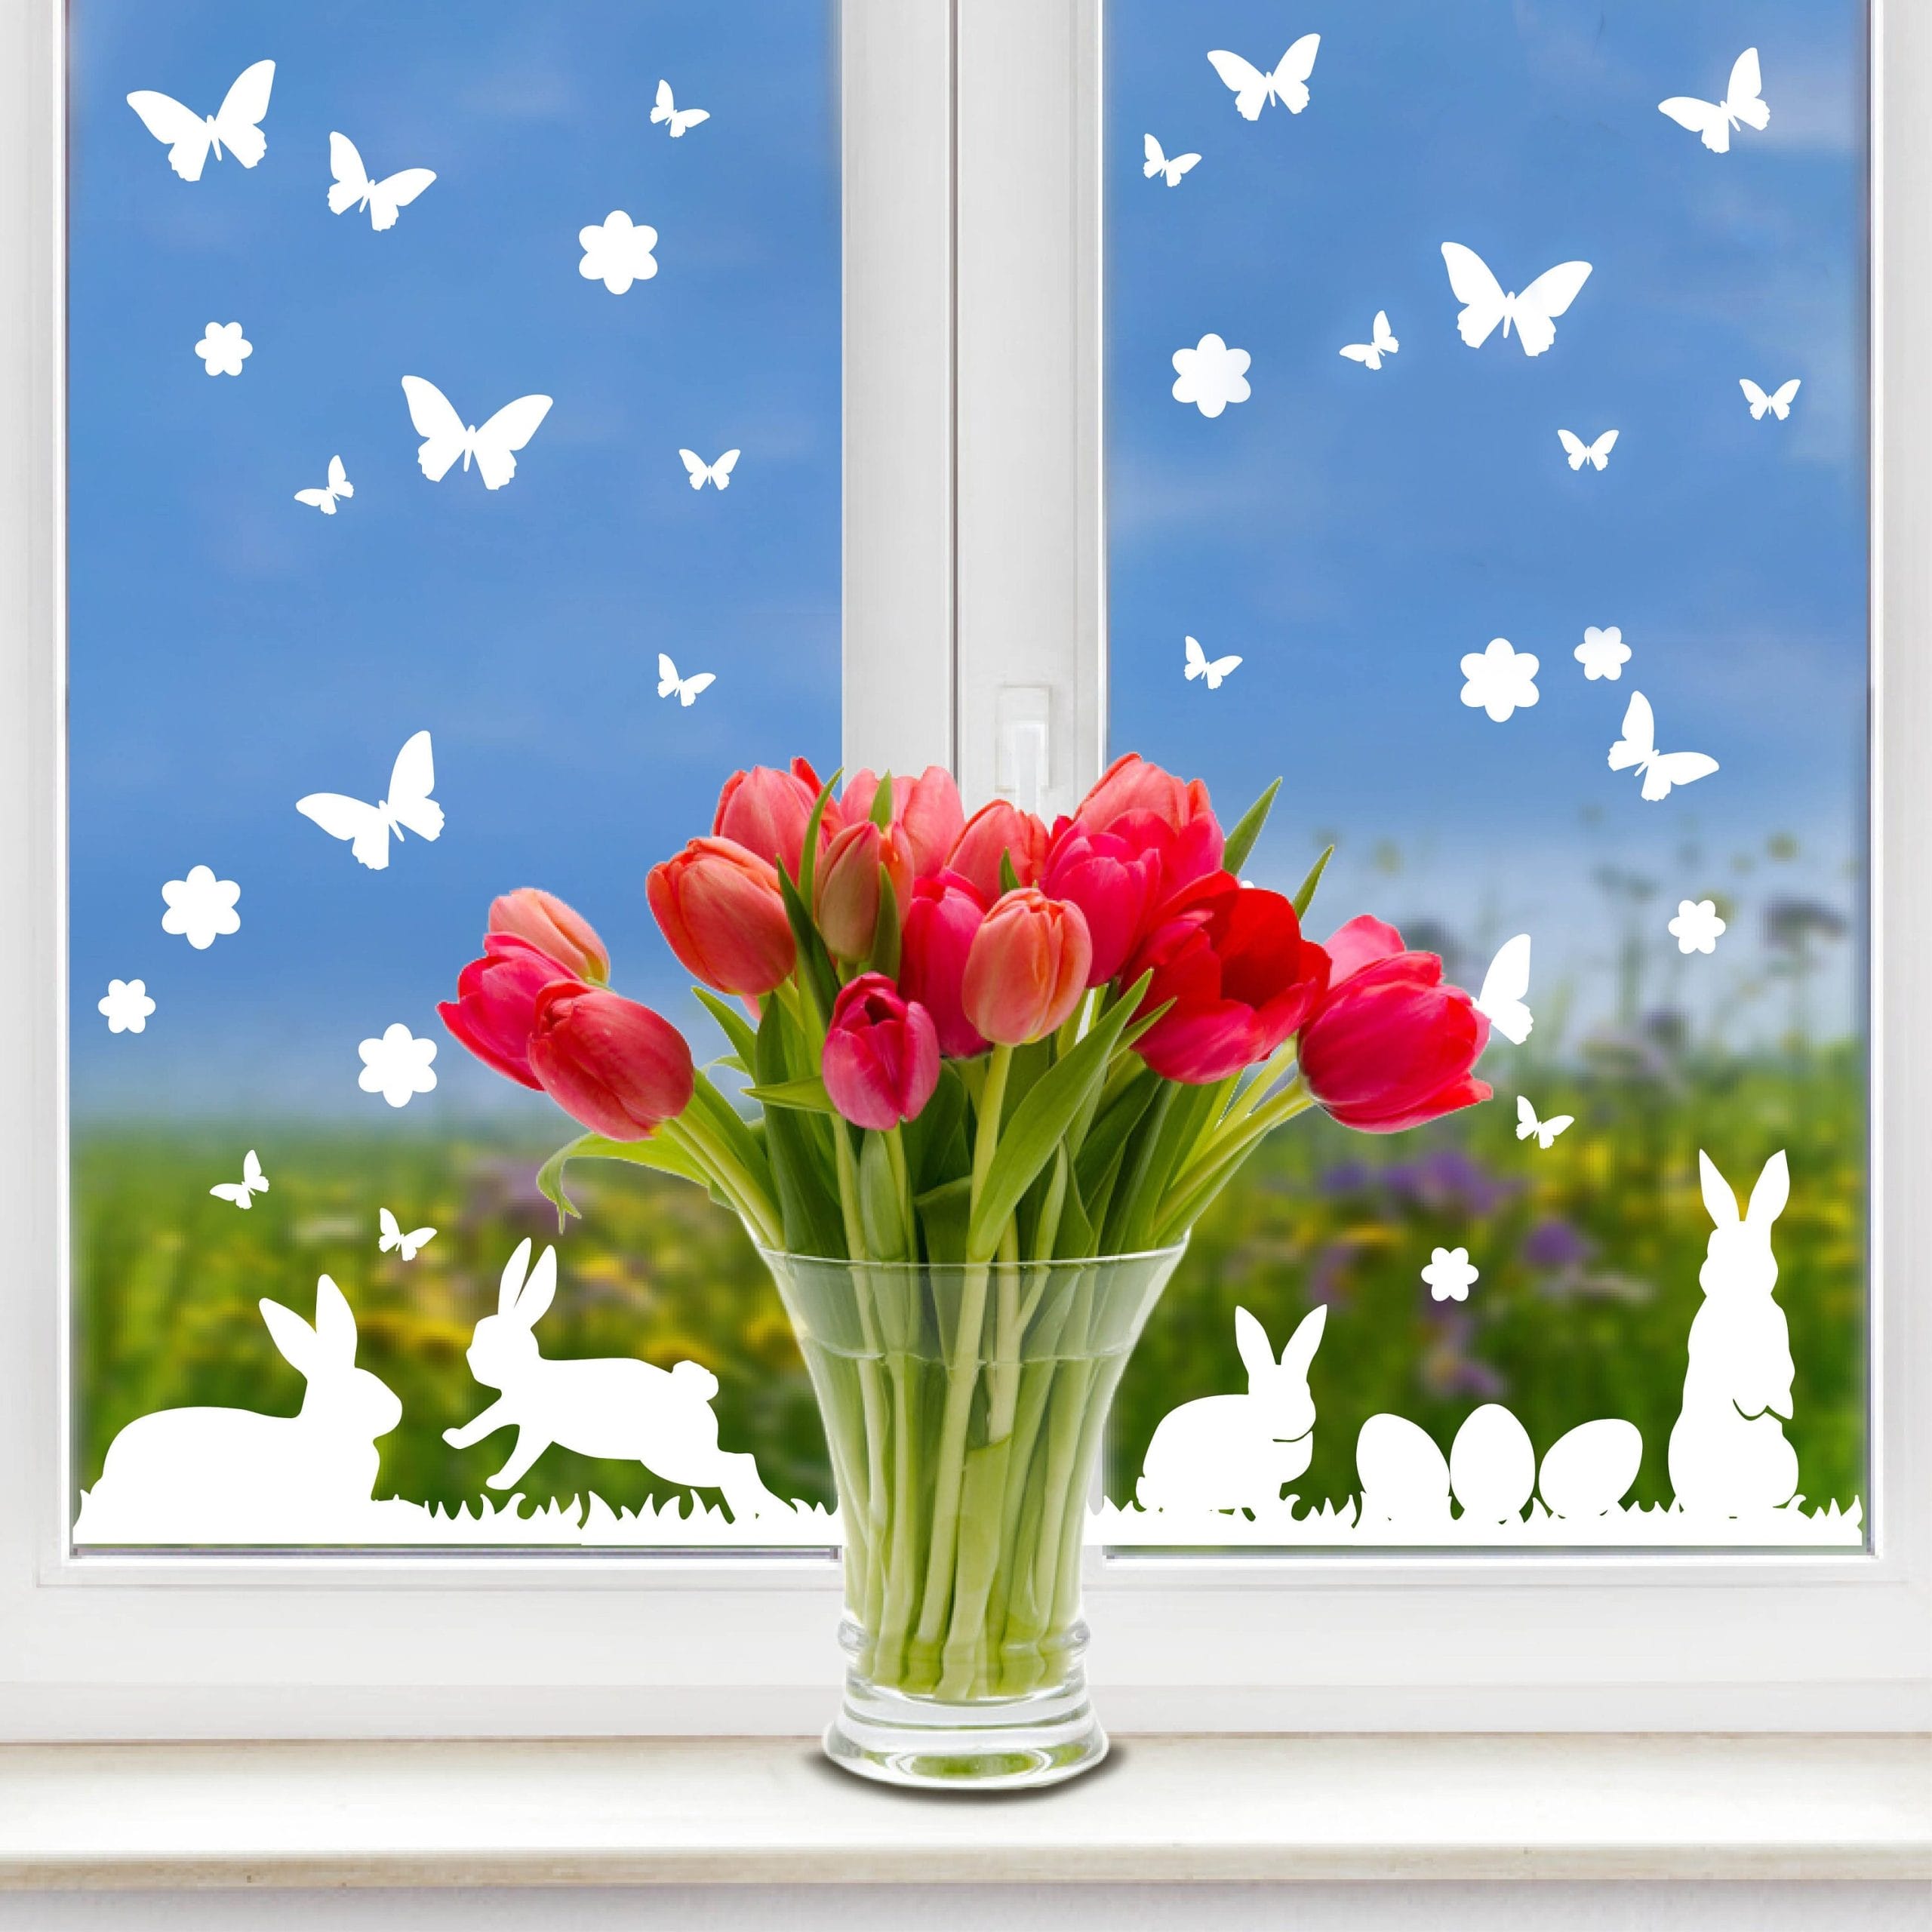 Fensteraufkleber Hasen mit Ostereiern und Schmetterlingen WIEDERVERWENDBAR